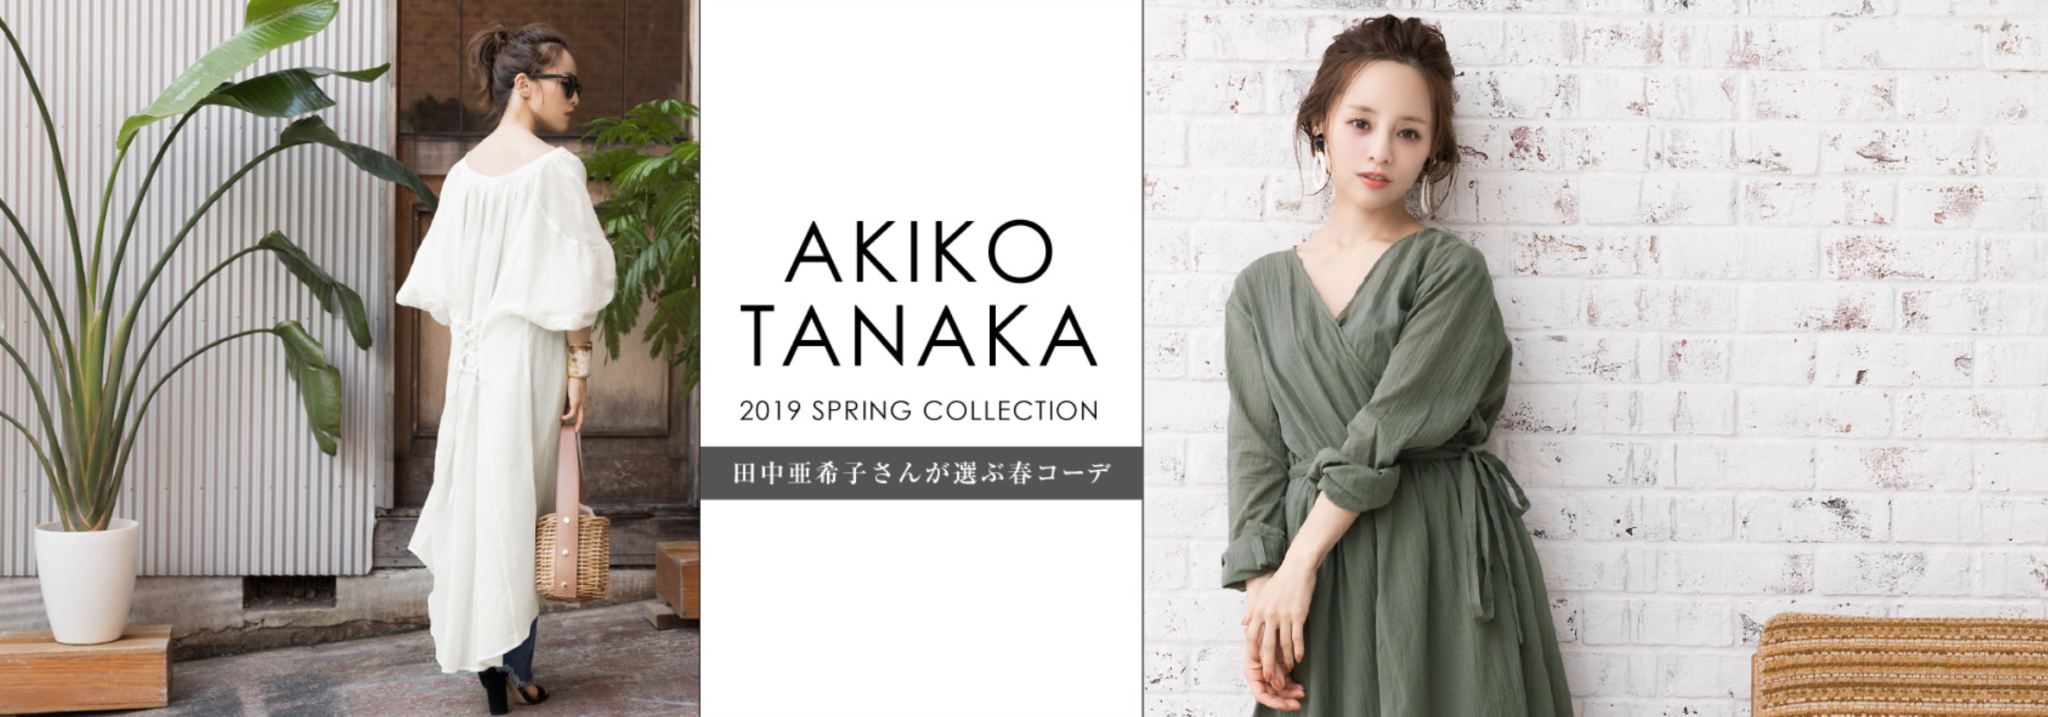 2018 11 09 18h46 28 - 田中亜希子さん着用商品企画はプチプラ通販サイトの「titivate」